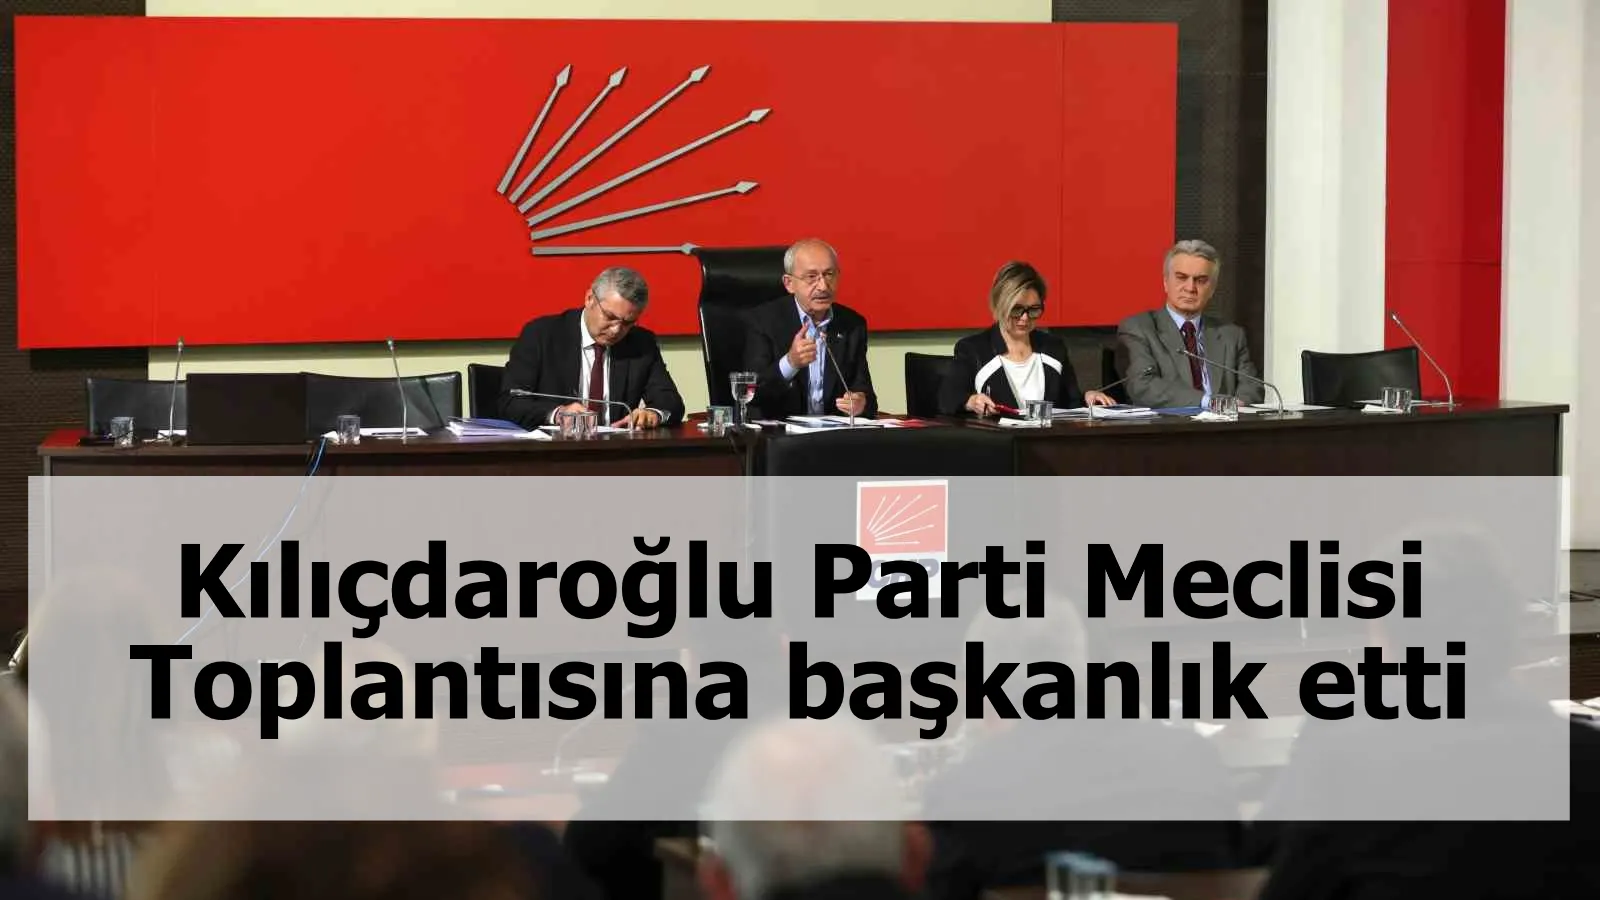 Kılıçdaroğlu Parti Meclisi Toplantısına başkanlık etti